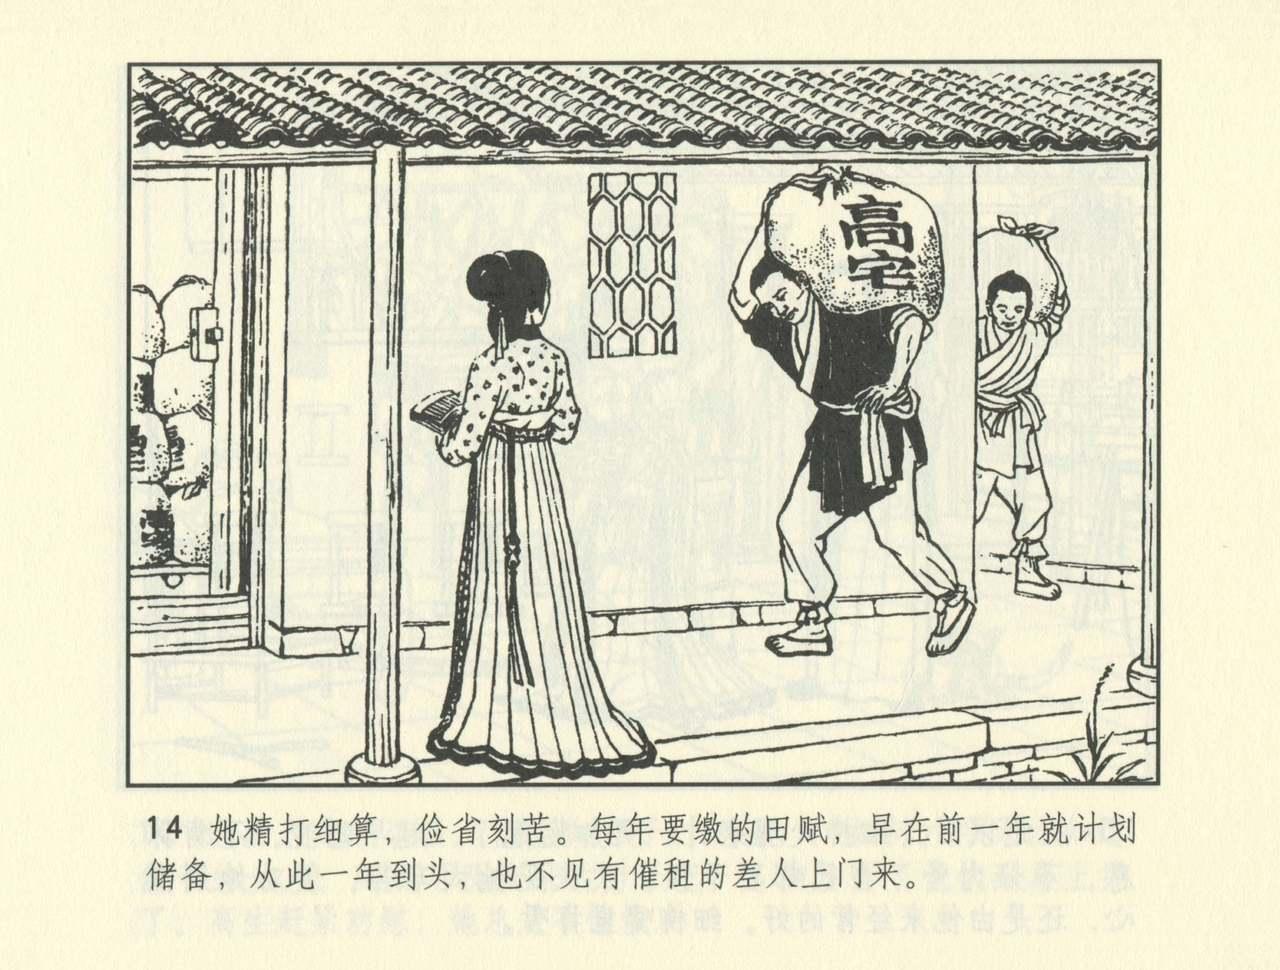 聊斋志异 张玮等绘 天津人民美术出版社 卷二十一 ~ 三十 486